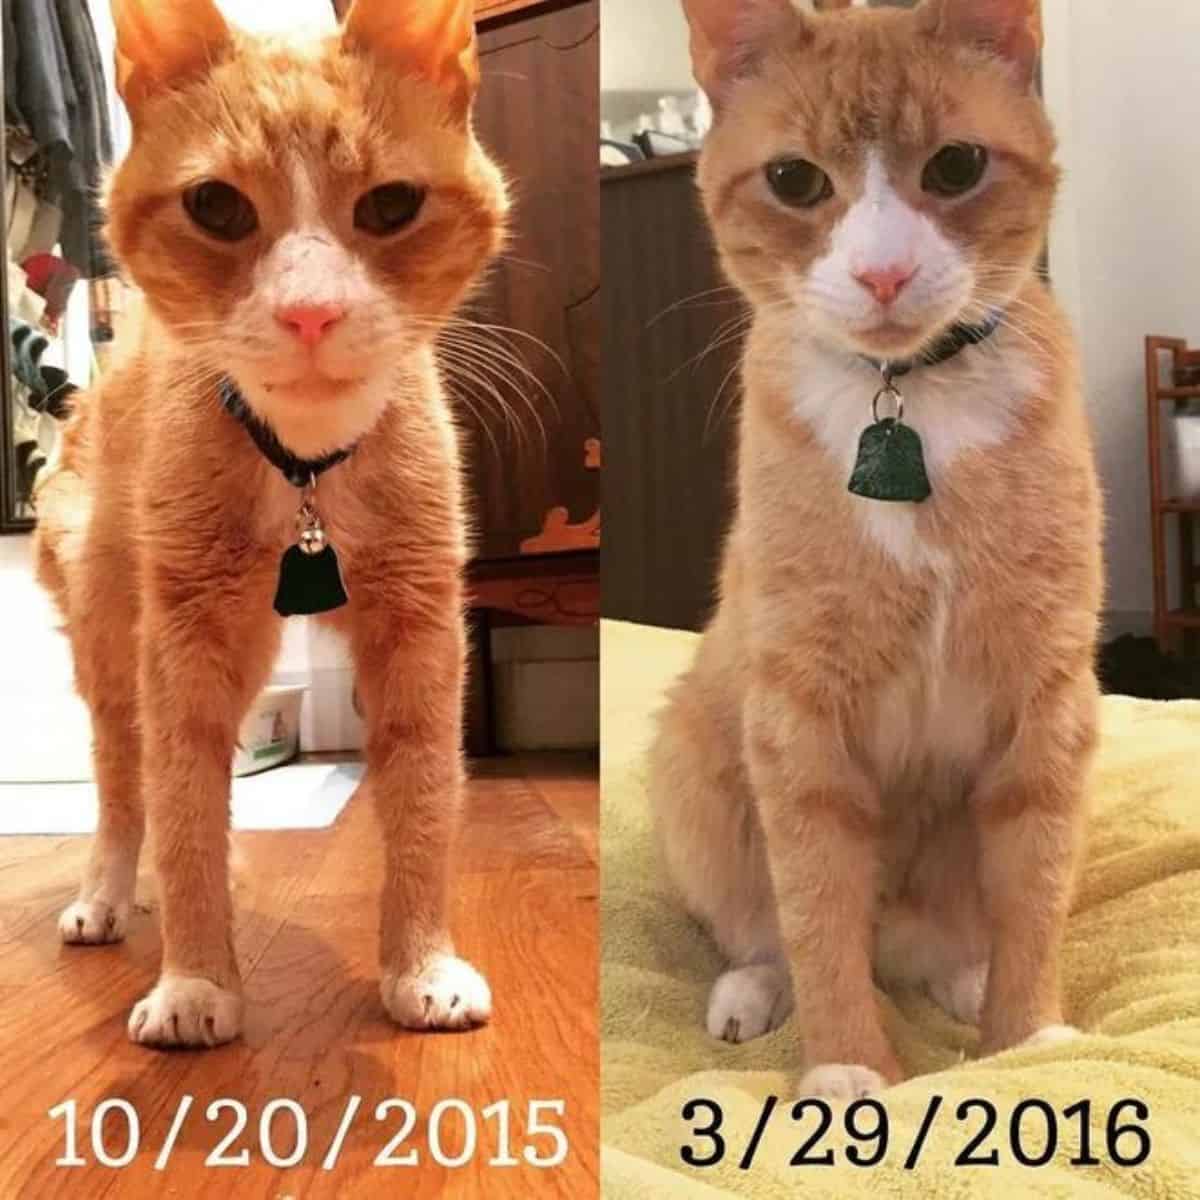 starved cat vs normal cat